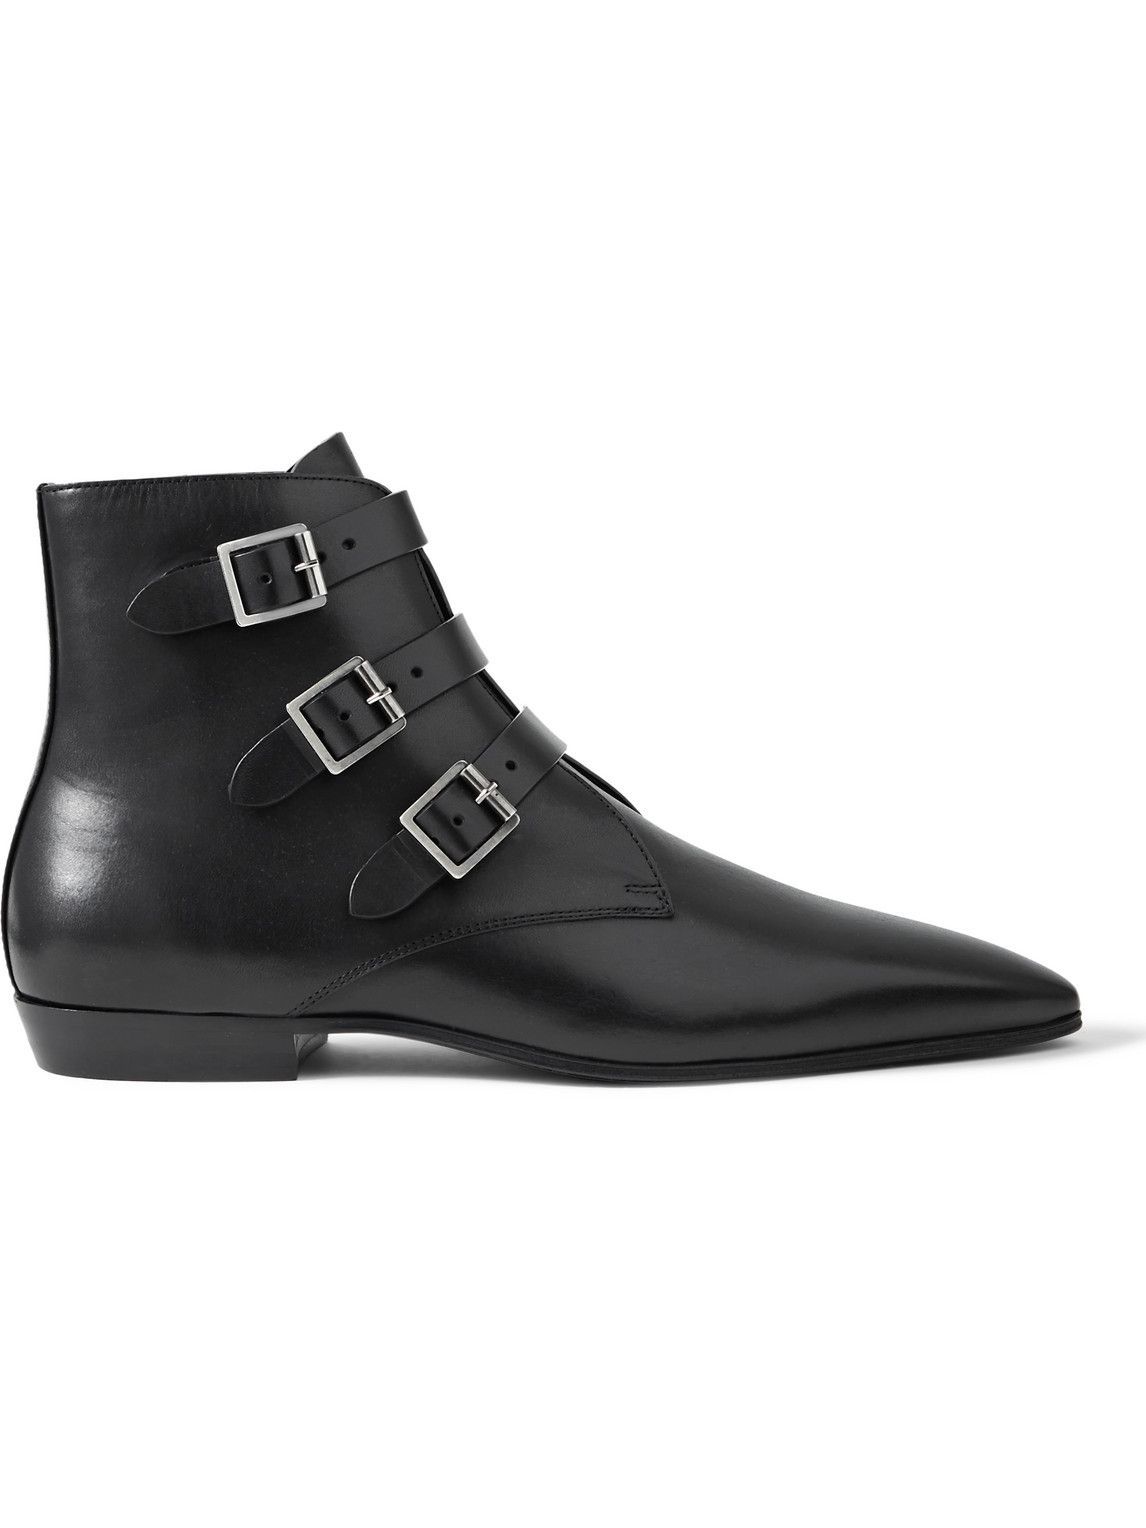 SAINT LAURENT - Buckled Leather Boots - Black Saint Laurent